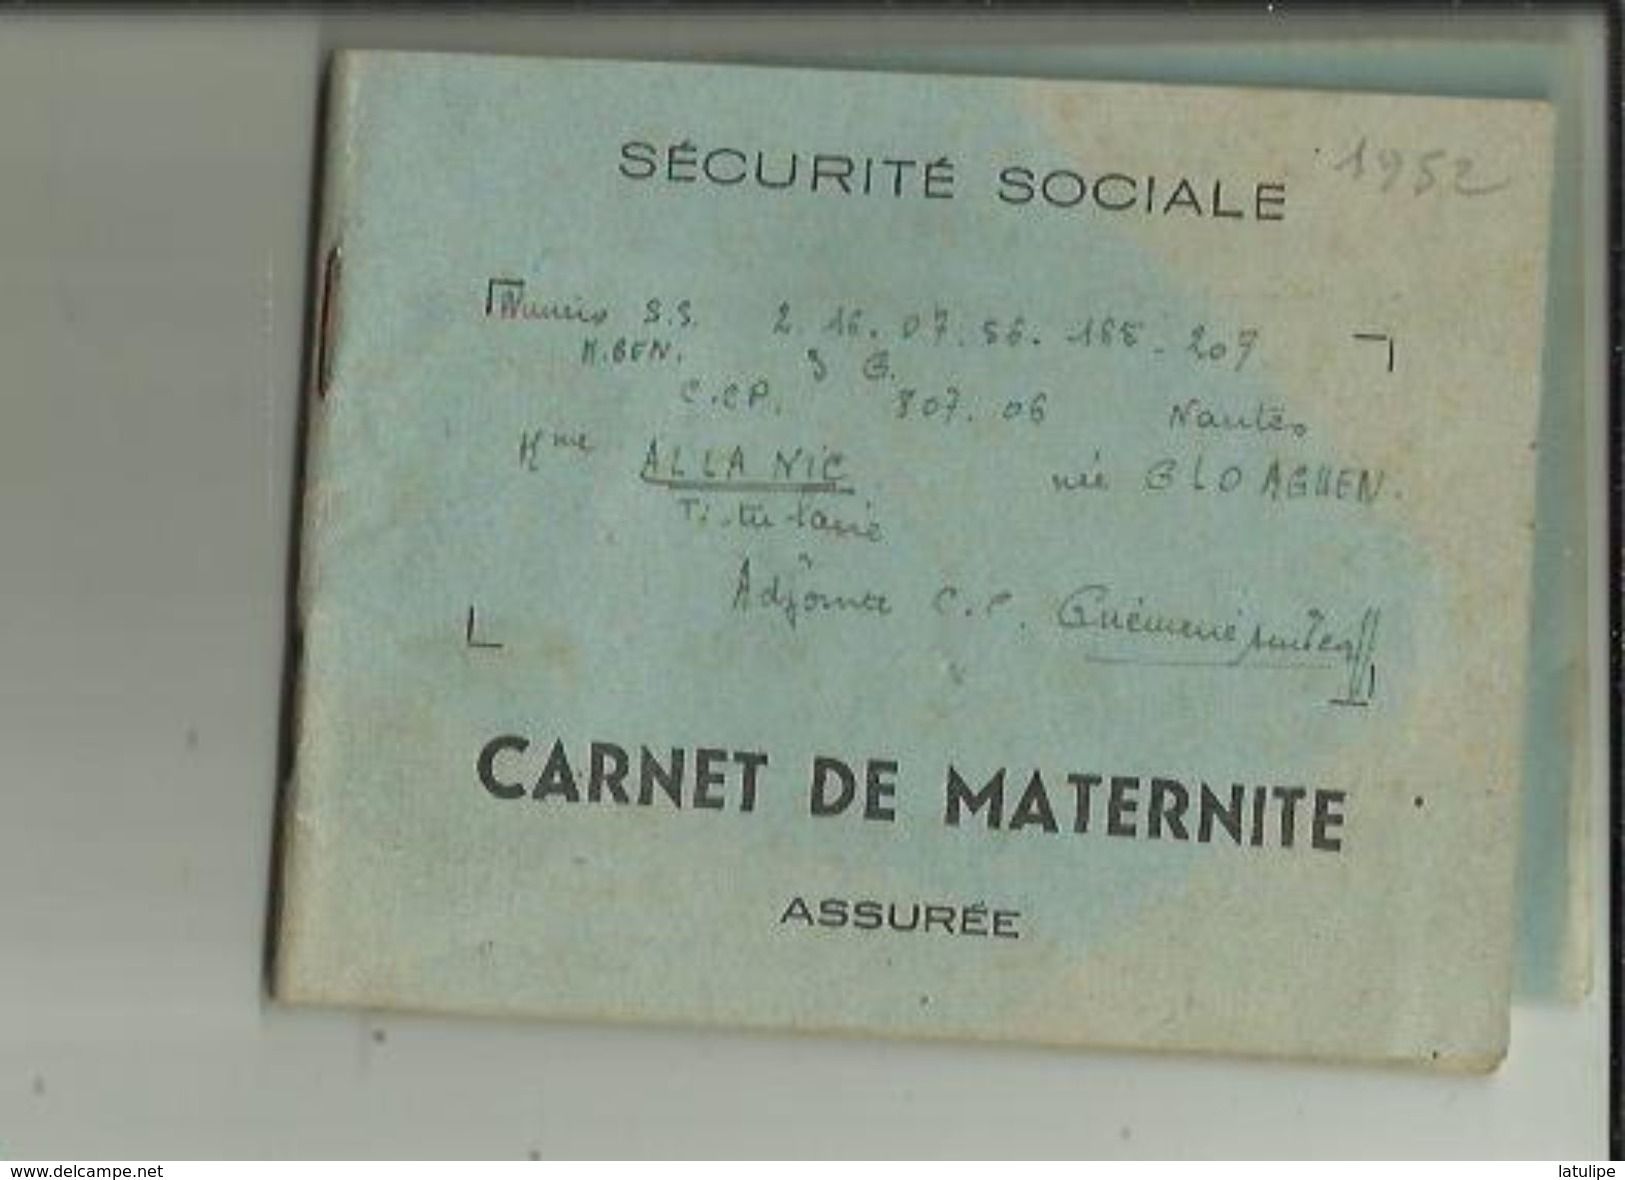 Carnet De Maternité De S S -(Assurée)  De Mme ALLANIC  Née GLOAGUEN _Institutrice Adjointe A GUEMENE Dur SCORFF En 1952 - Medical & Dental Equipment